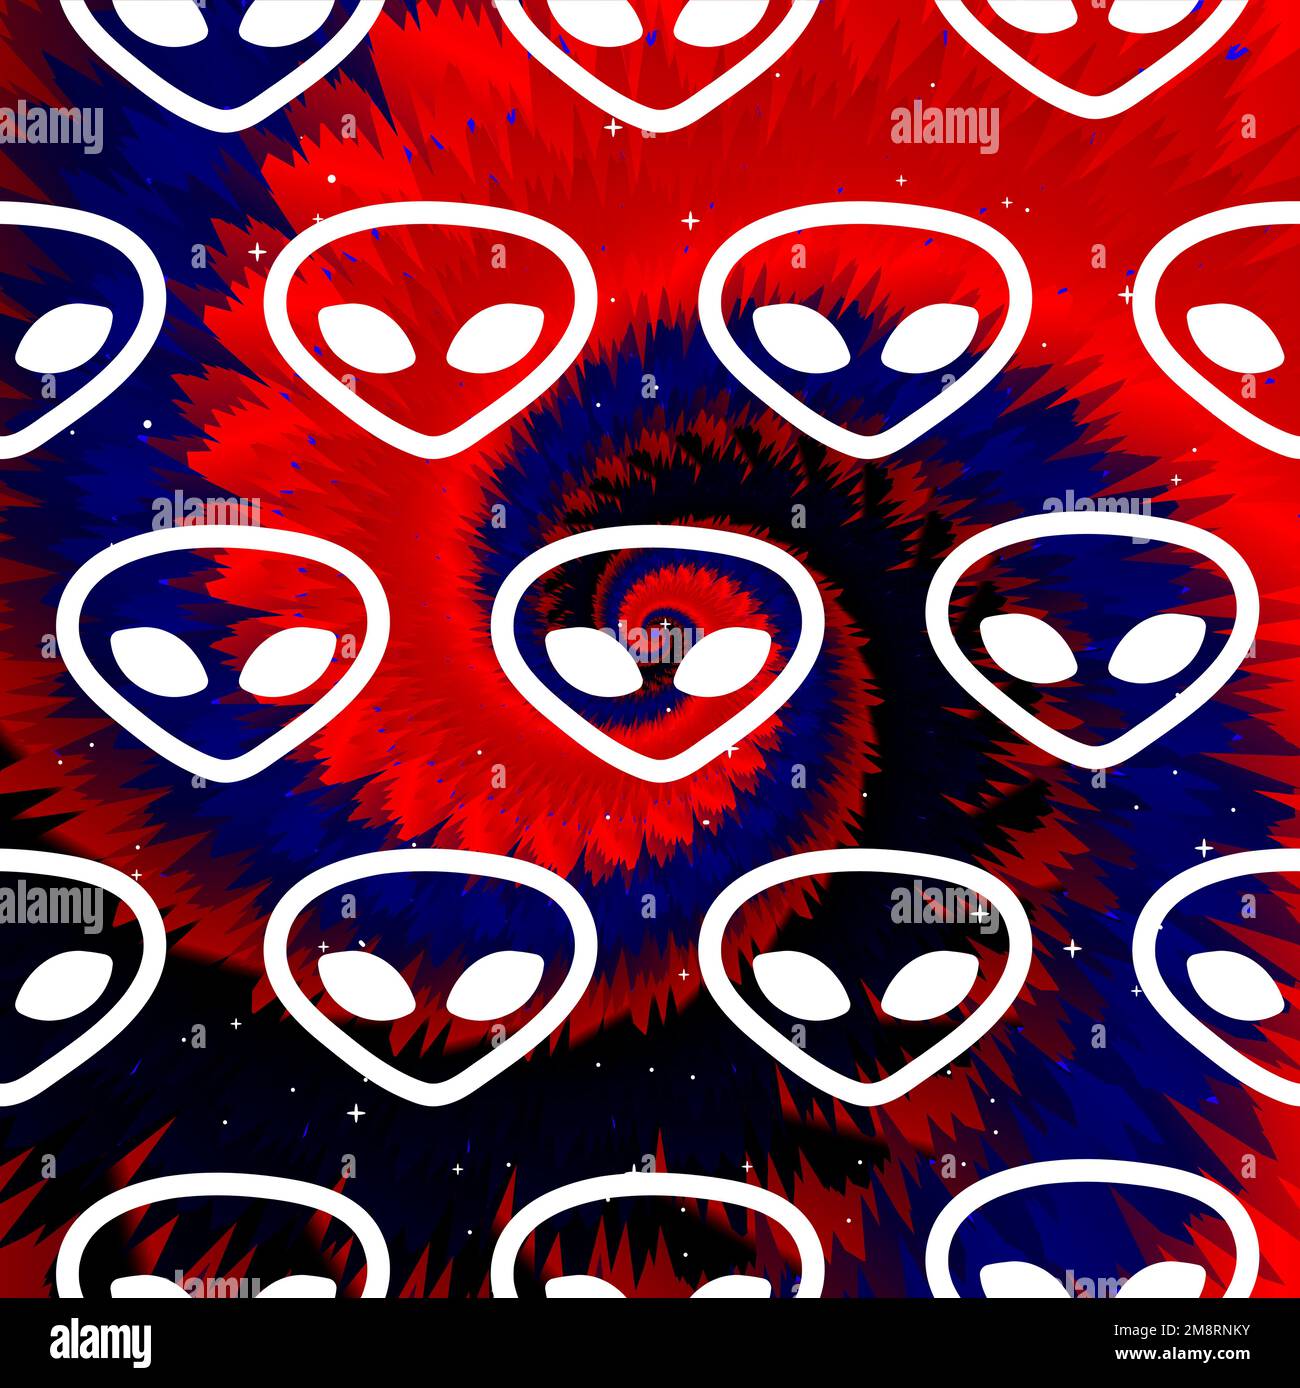 Alien Faces,tie dye background.Vector tie dye Crazy Cartoon personaggio Illustration.Ufo,alien,tiedye sfondo,pattern,wallpaper print concept Illustrazione Vettoriale